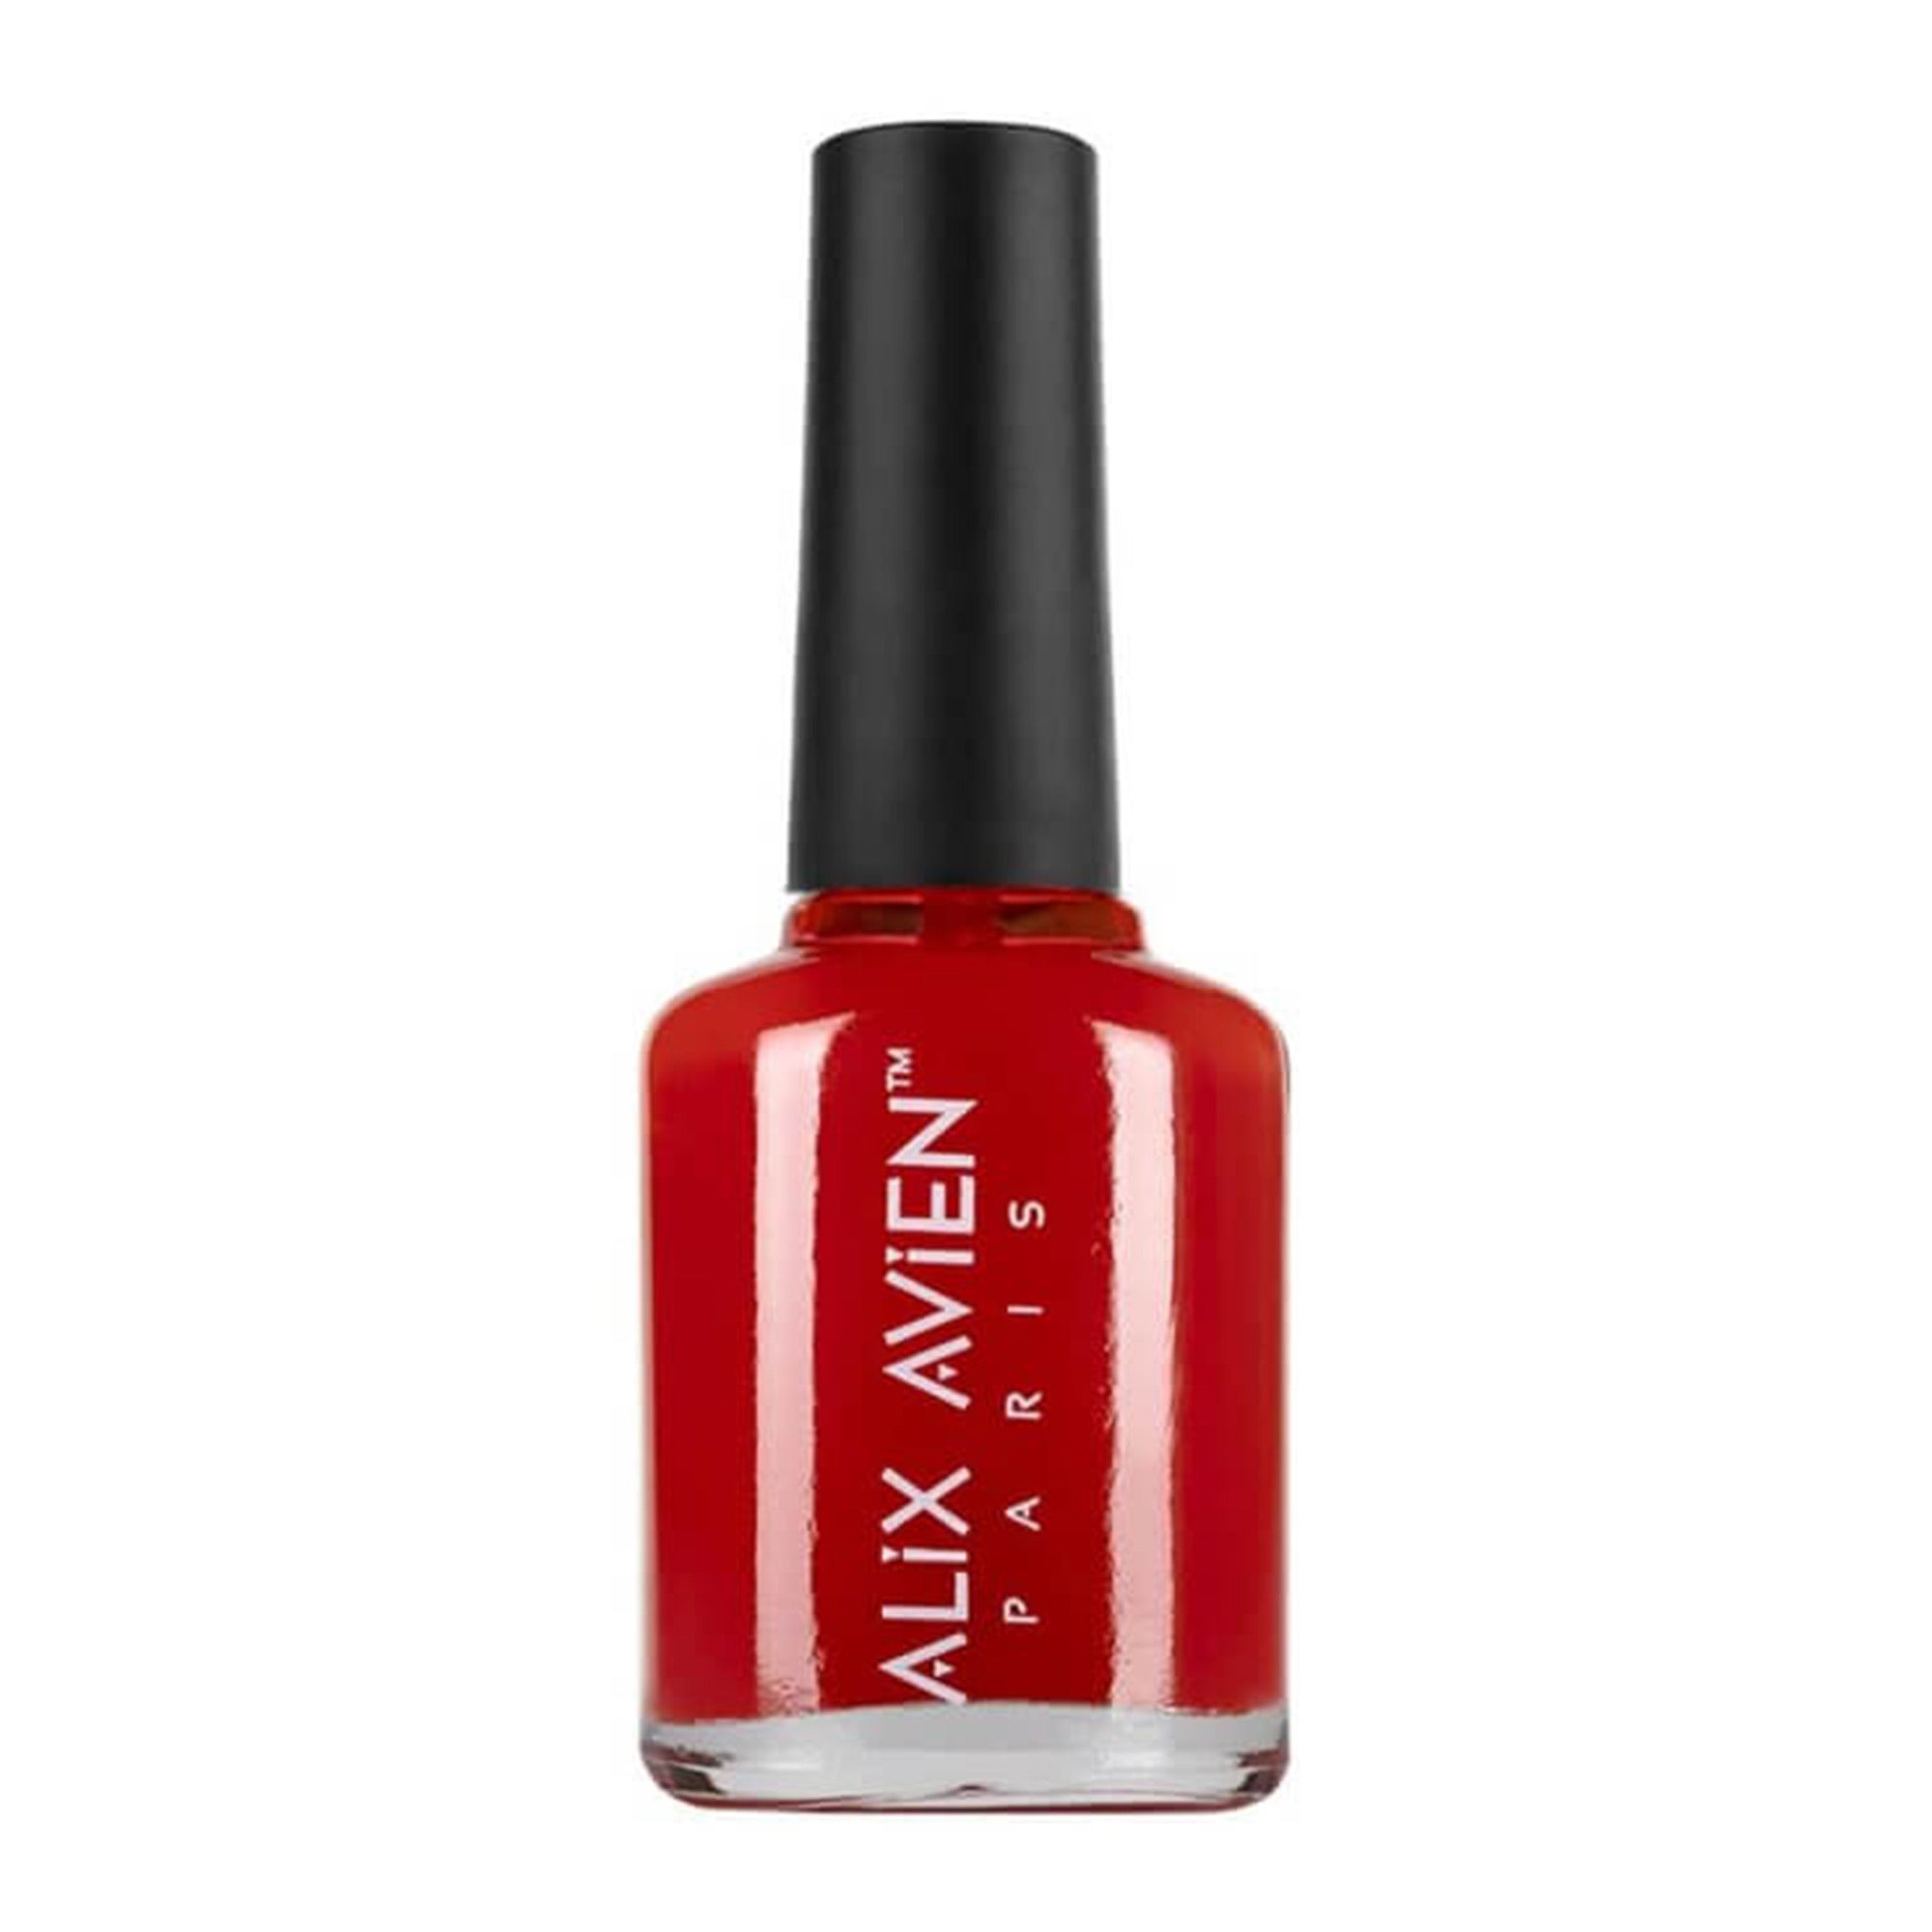 Alix Avien - Nail Polish No.14 (Red)